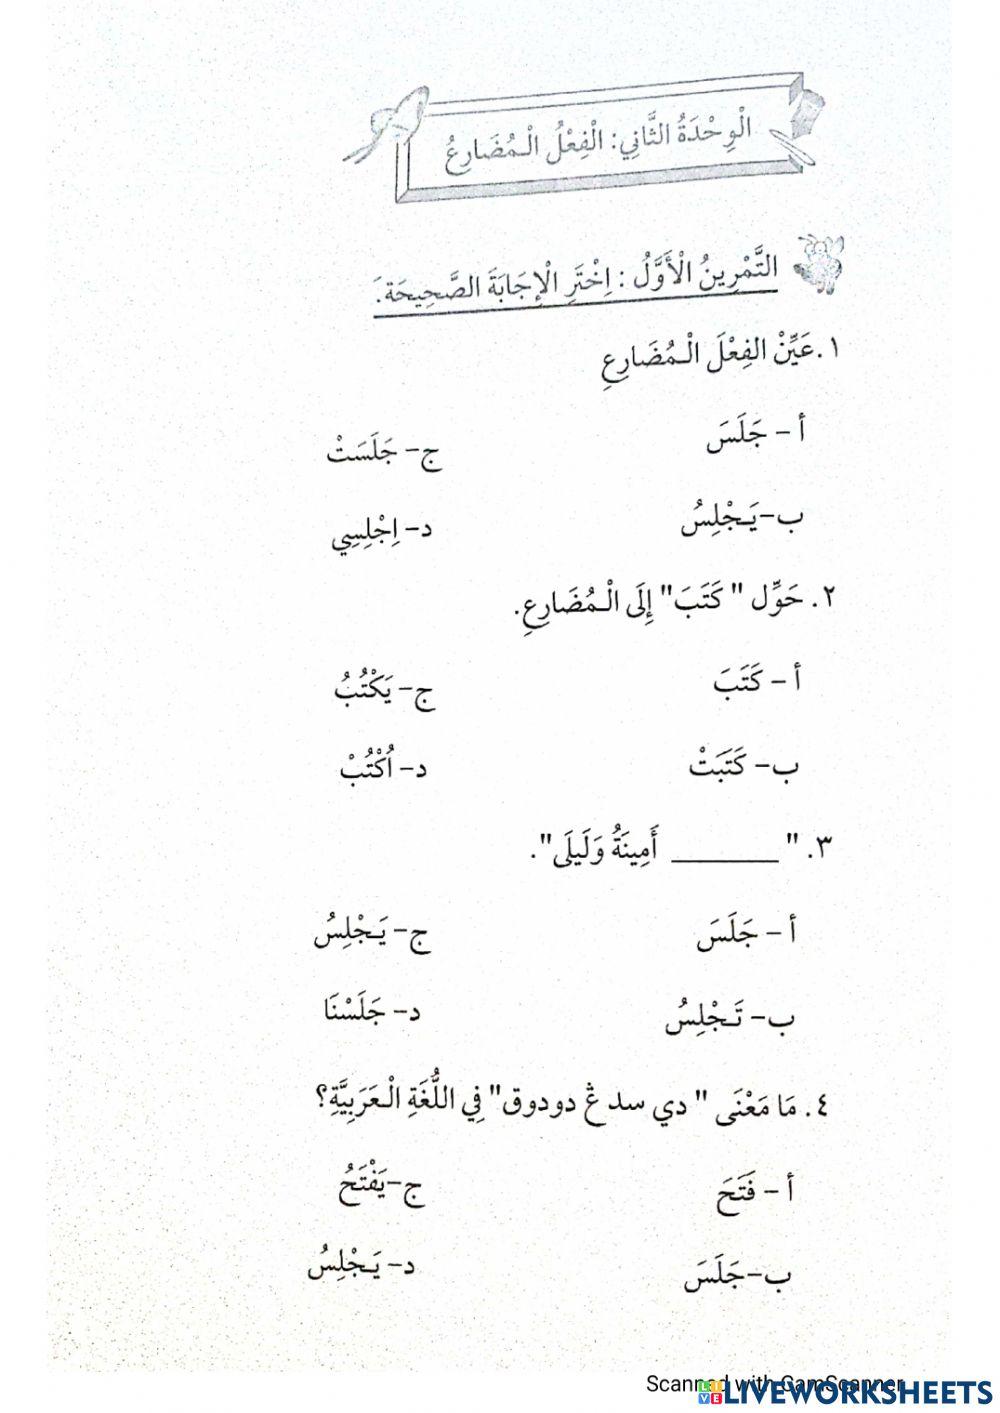 Bahasa arab